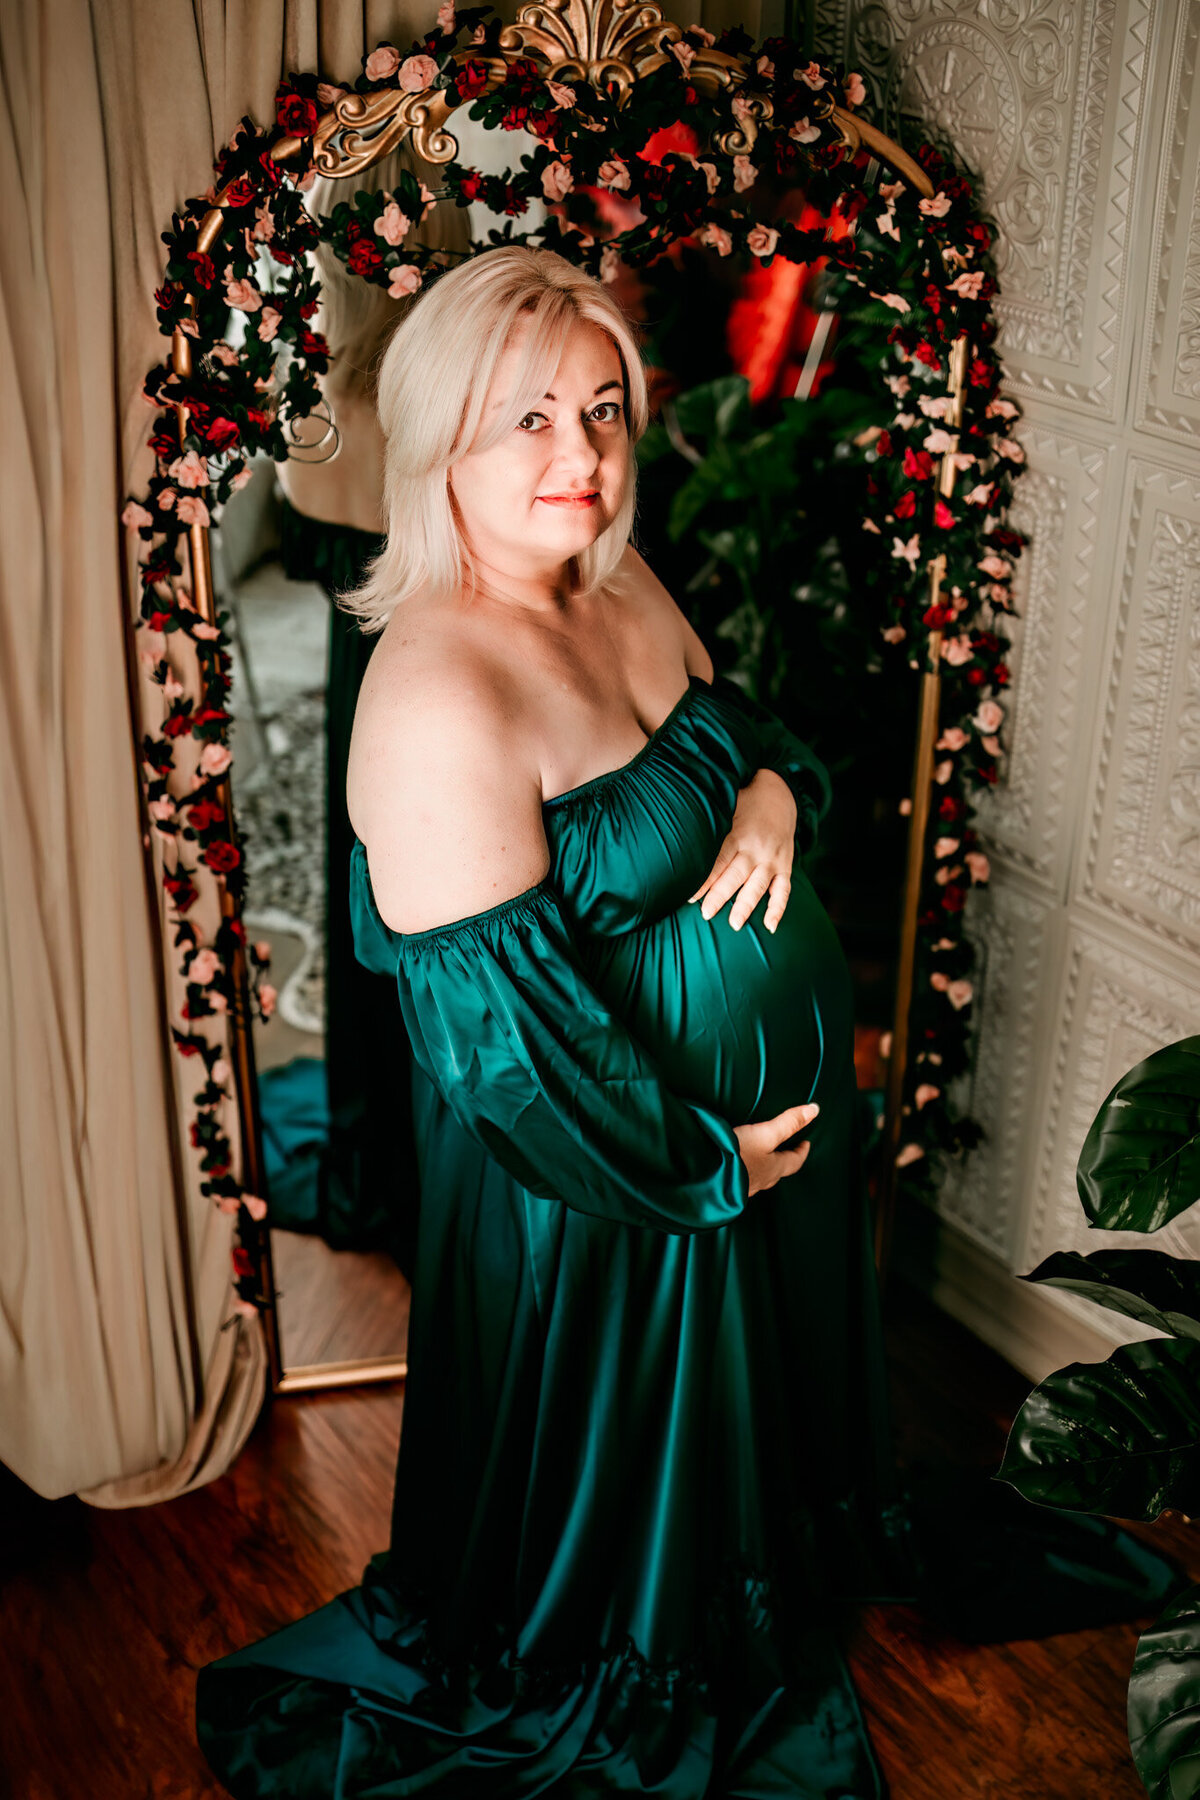 maryland-maternity-photographer-45